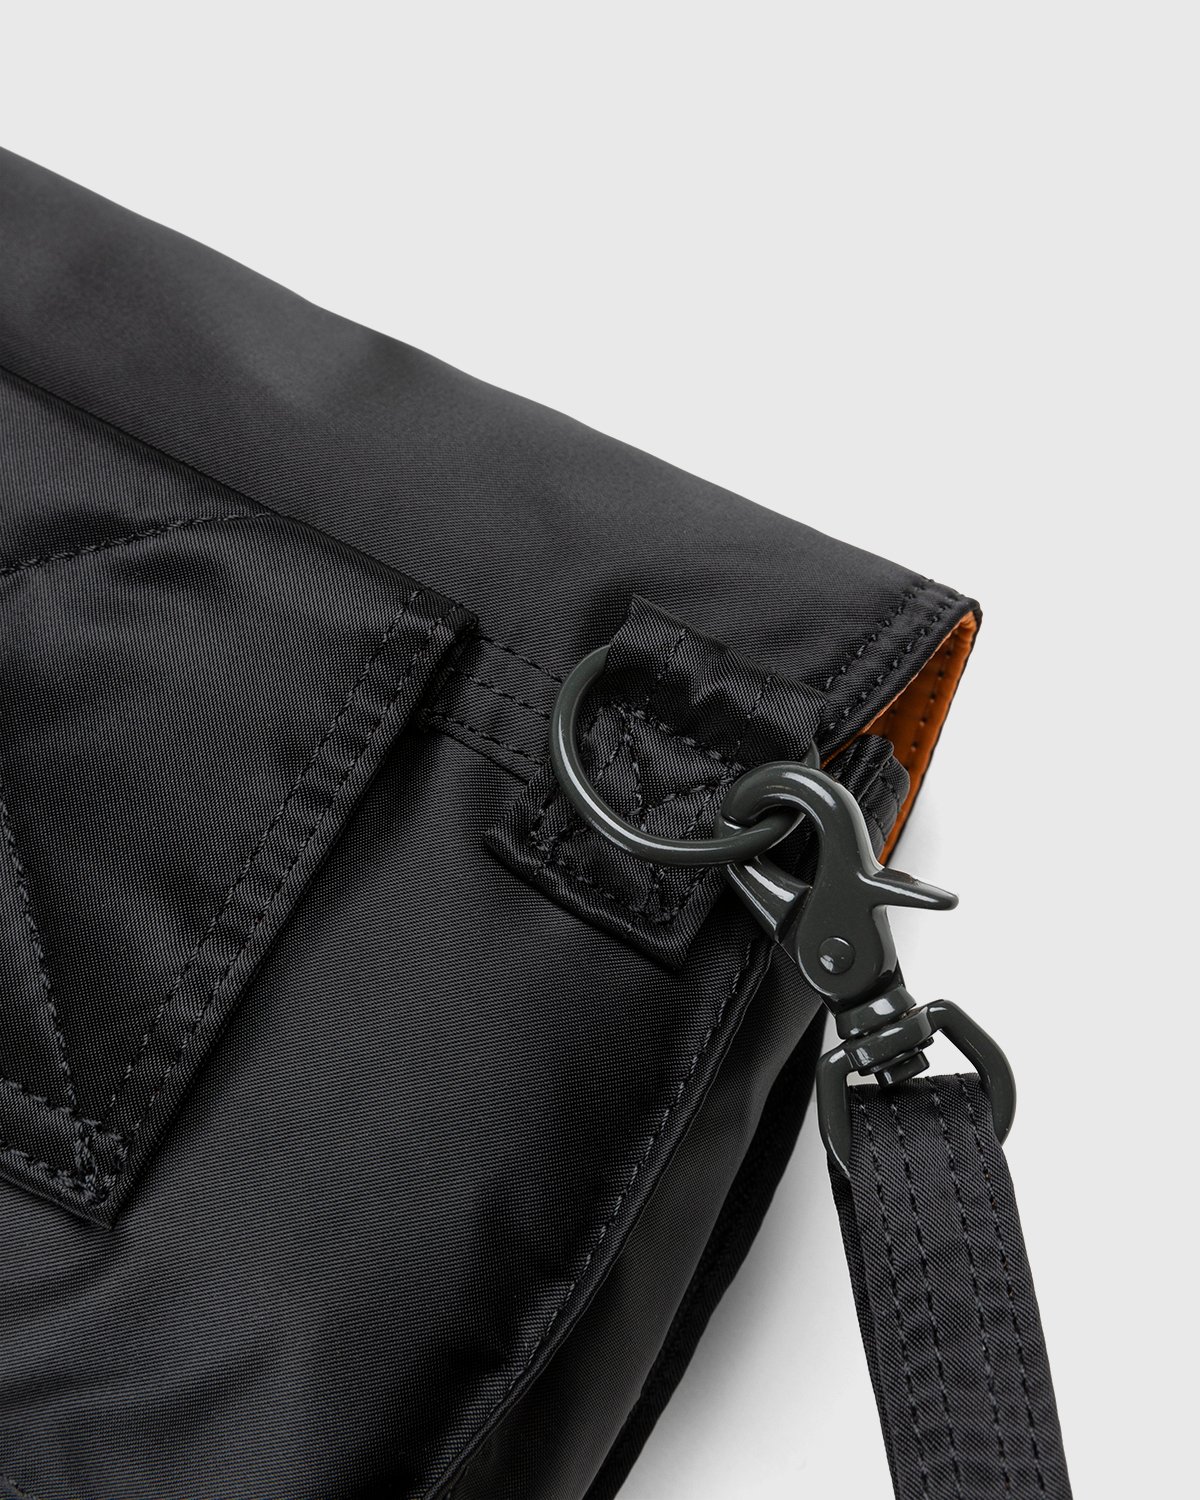 Porter-Yoshida & Co. - Tanker Clip Shoulder Bag Black - Accessories - Black - Image 5